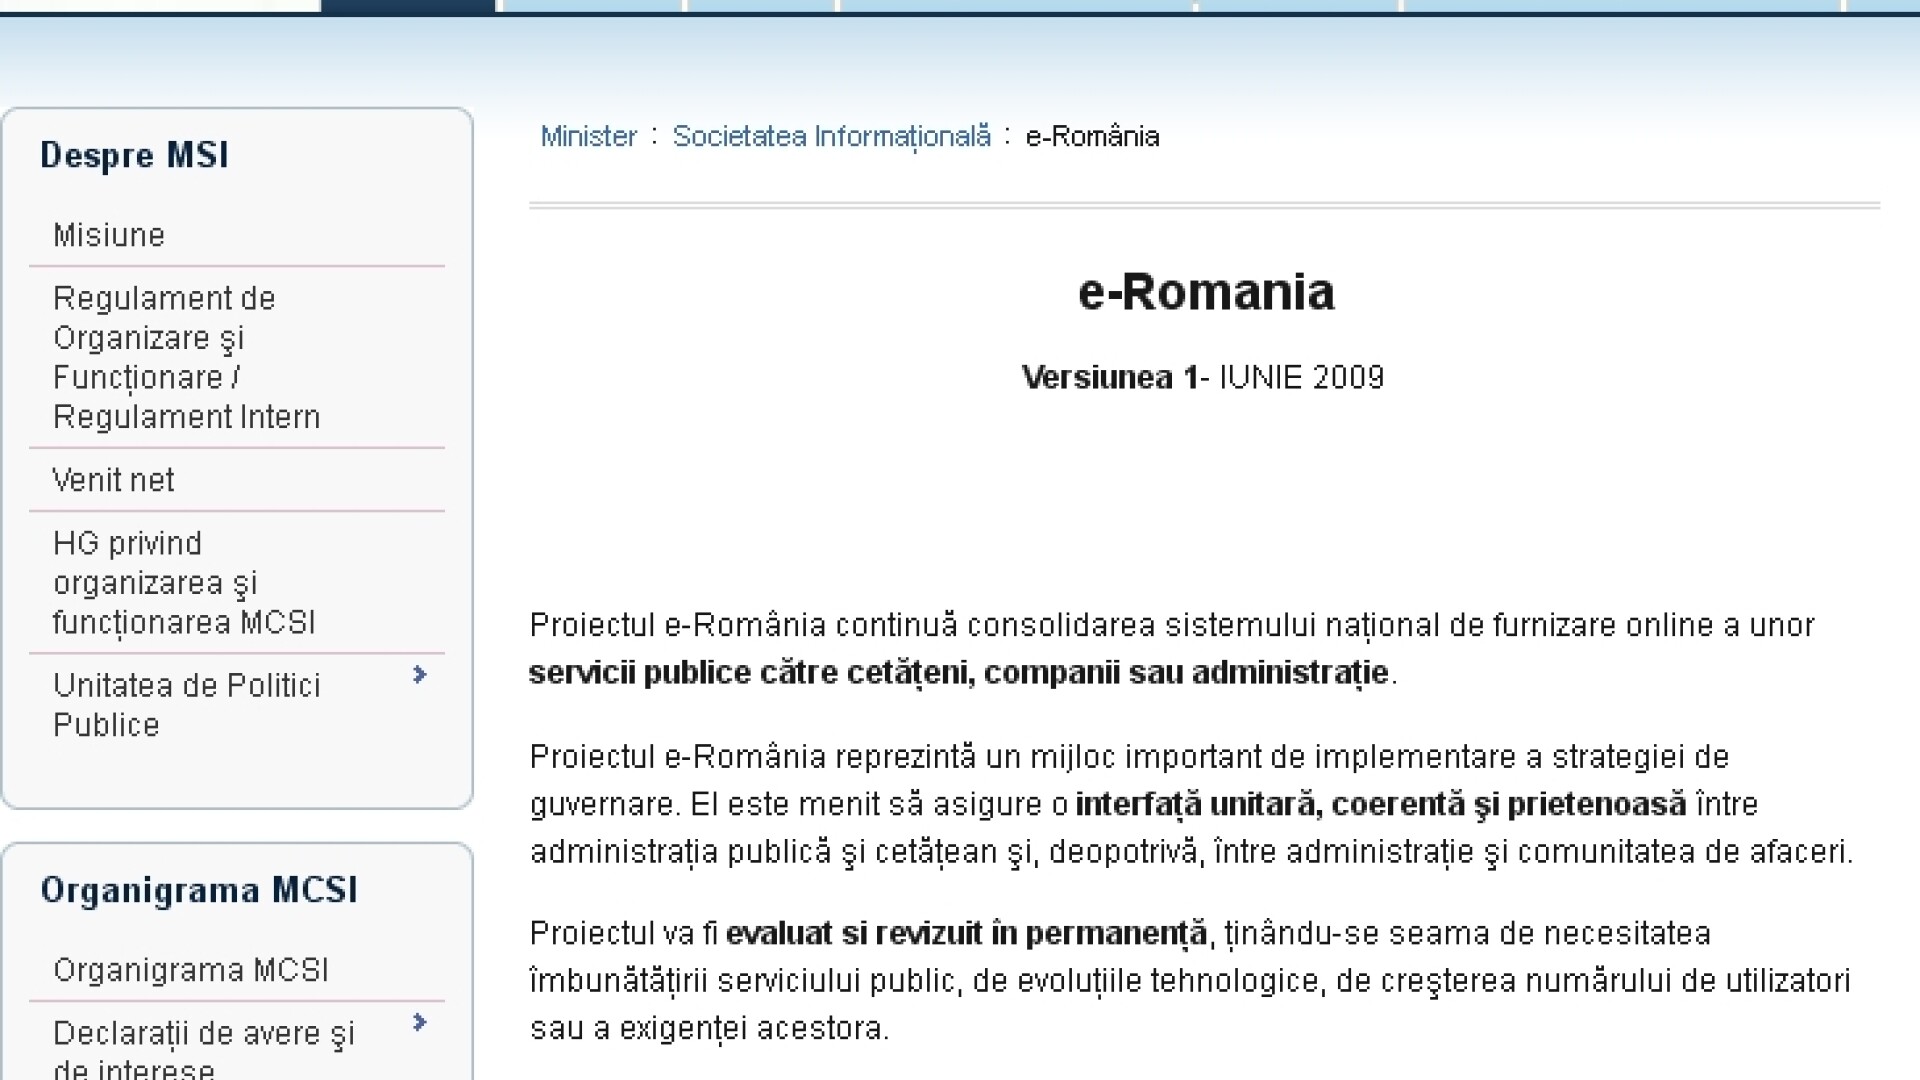 E-Romania